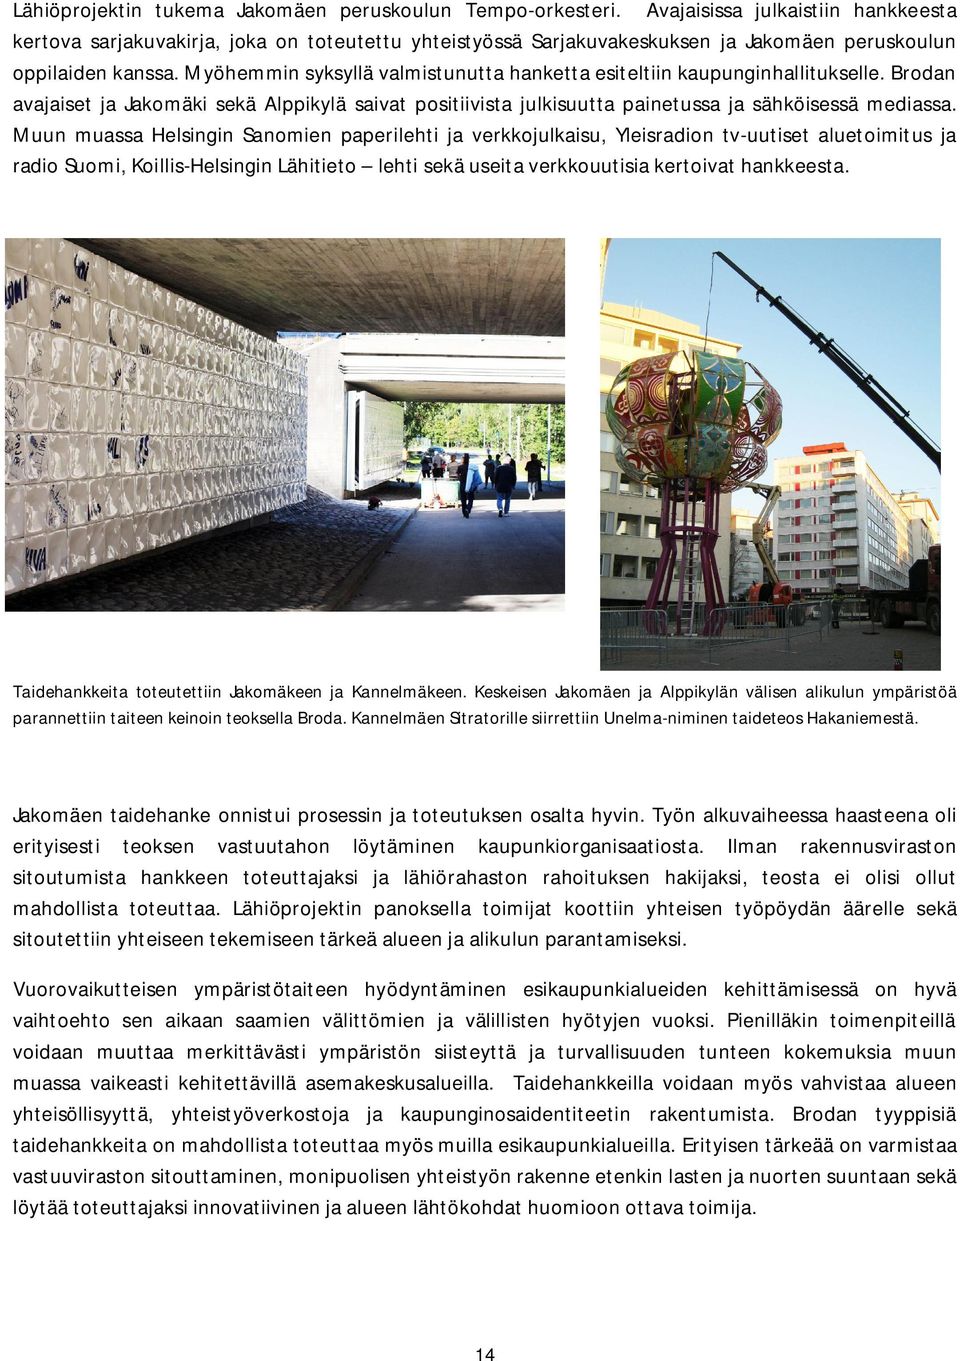 Myöhemmin syksyllä valmistunutta hanketta esiteltiin kaupunginhallitukselle. Brodan avajaiset ja Jakomäki sekä Alppikylä saivat positiivista julkisuutta painetussa ja sähköisessä mediassa.